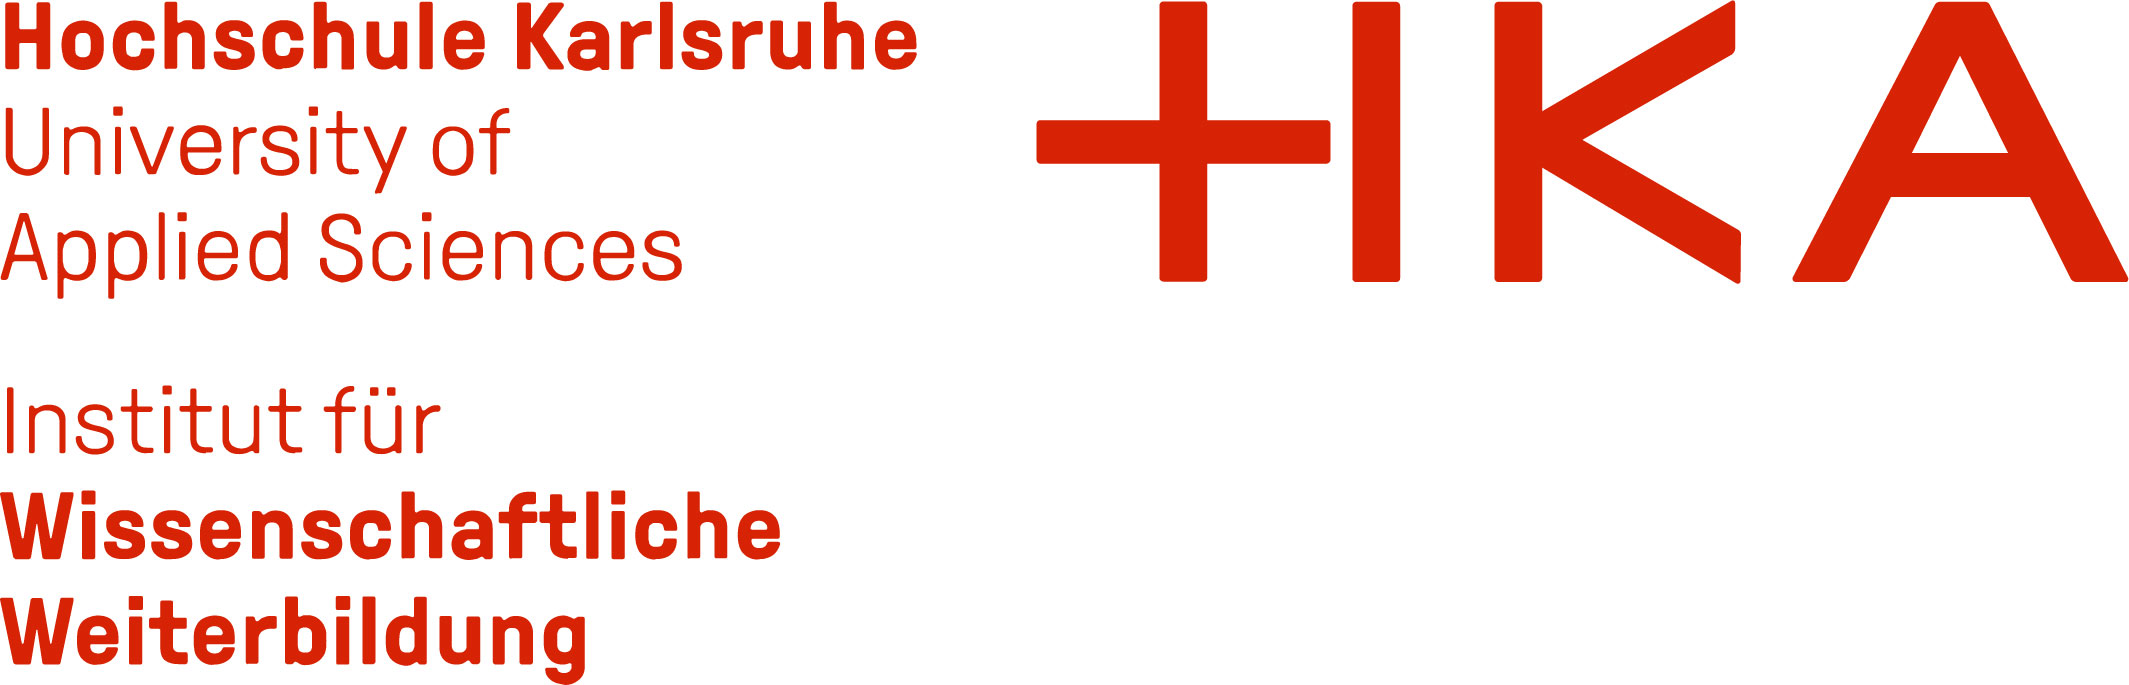 Hochschule Karlsruhe | Institut für Wissenschaftliche Weiterbildung Logo